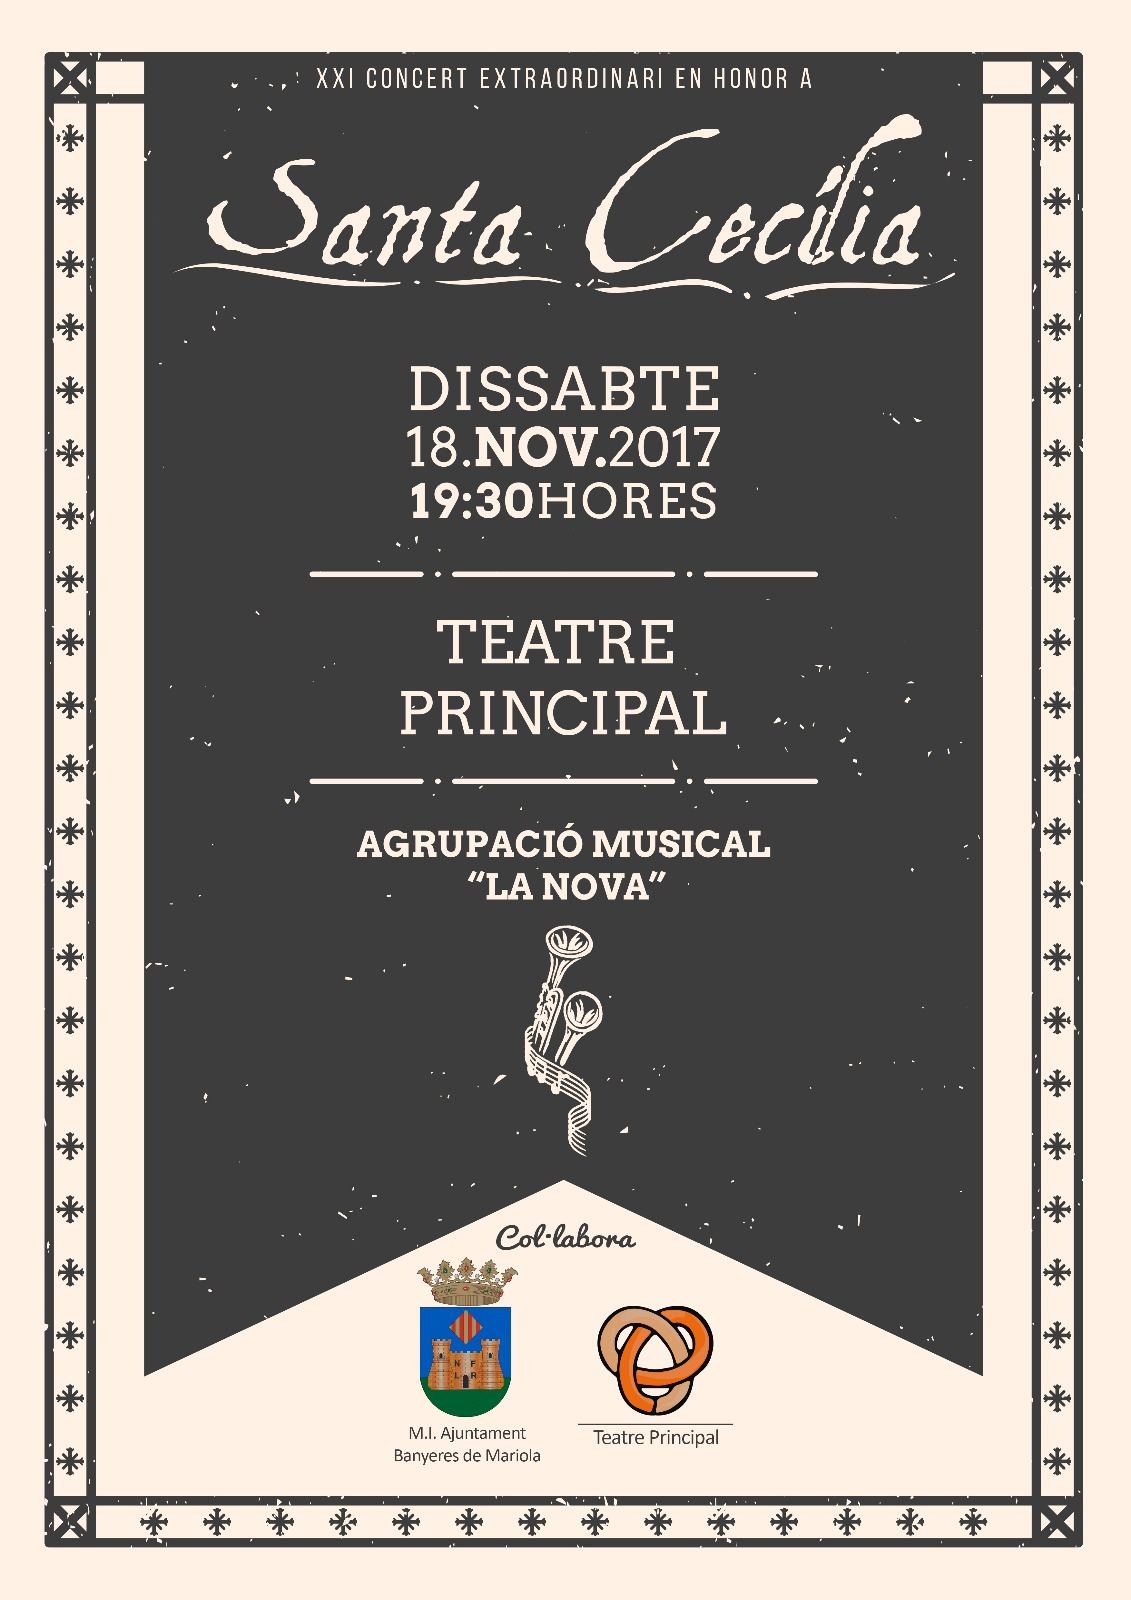 XXI Concert Extraordinari en honor a Santa Cecília